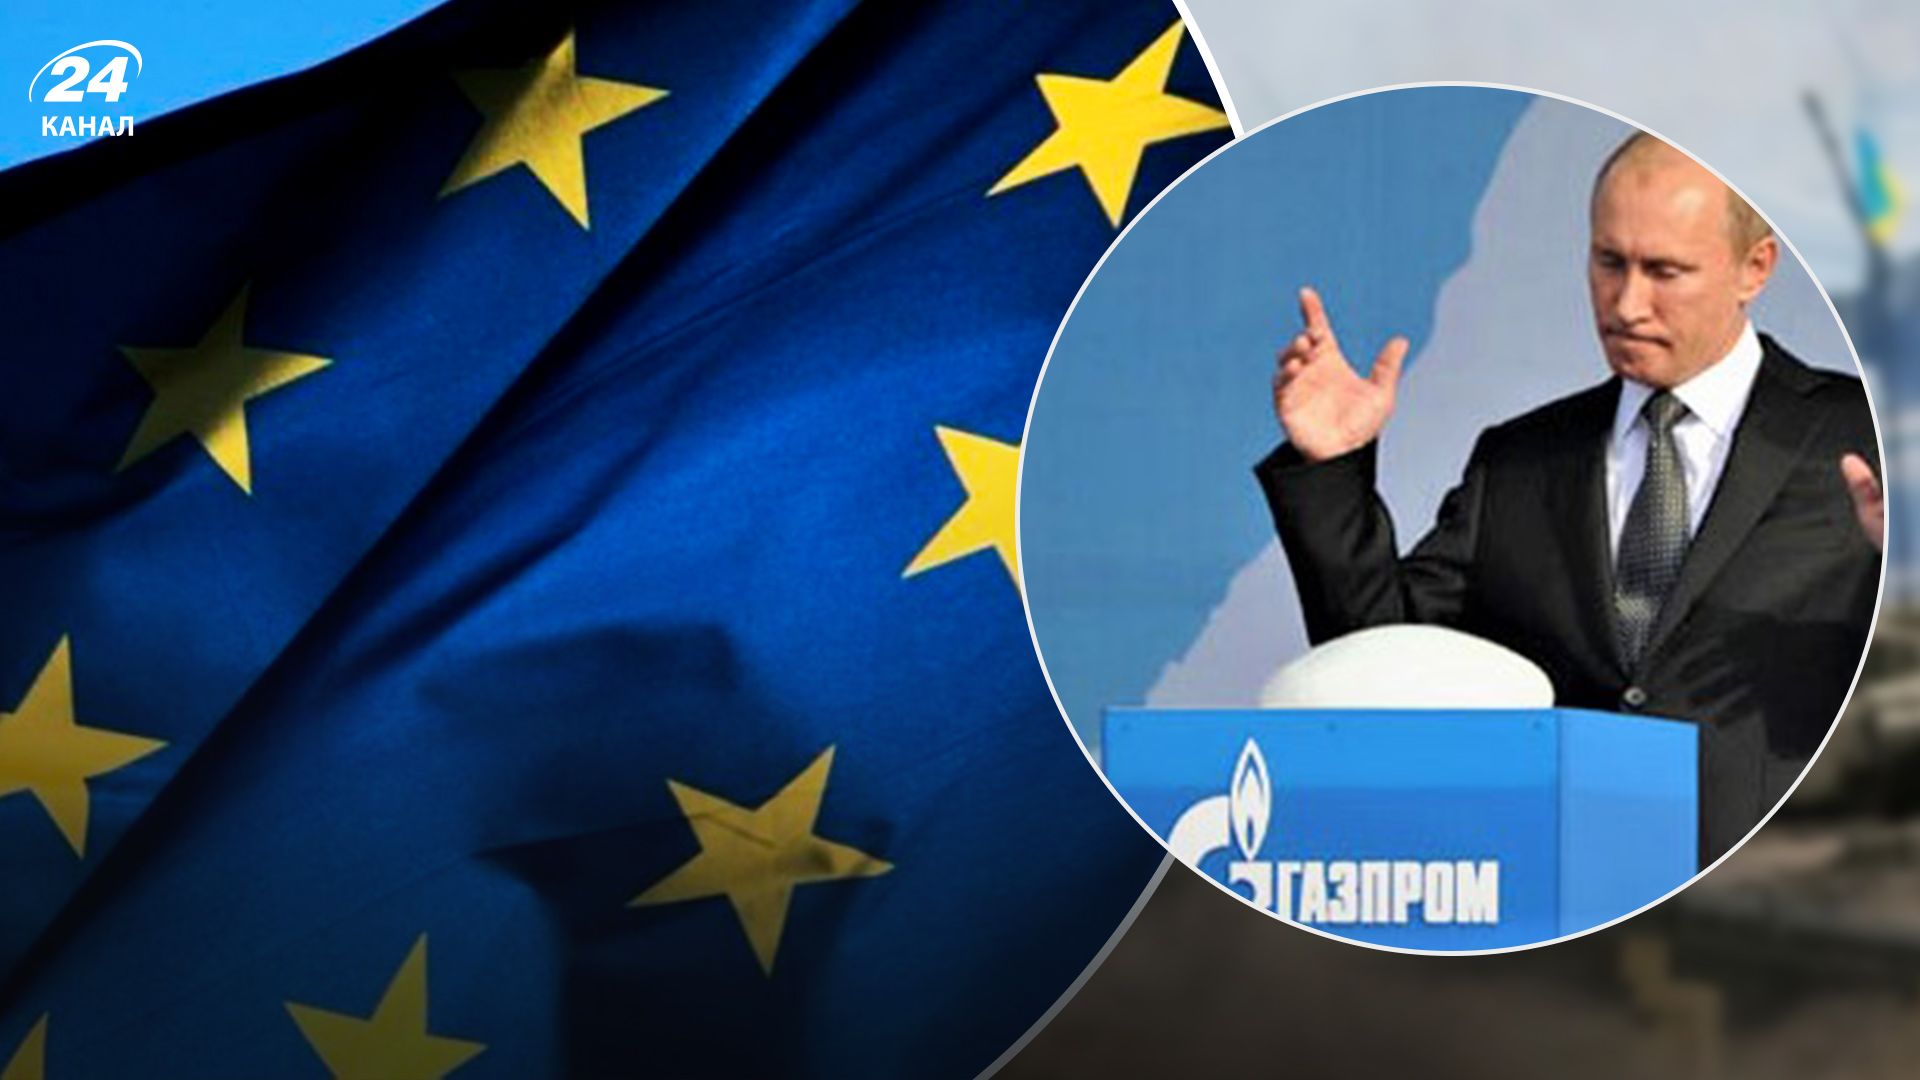 Європі неприйнятно відмовлятися від санкцій, – Шейтельман прокоментував газовий шантаж путіна